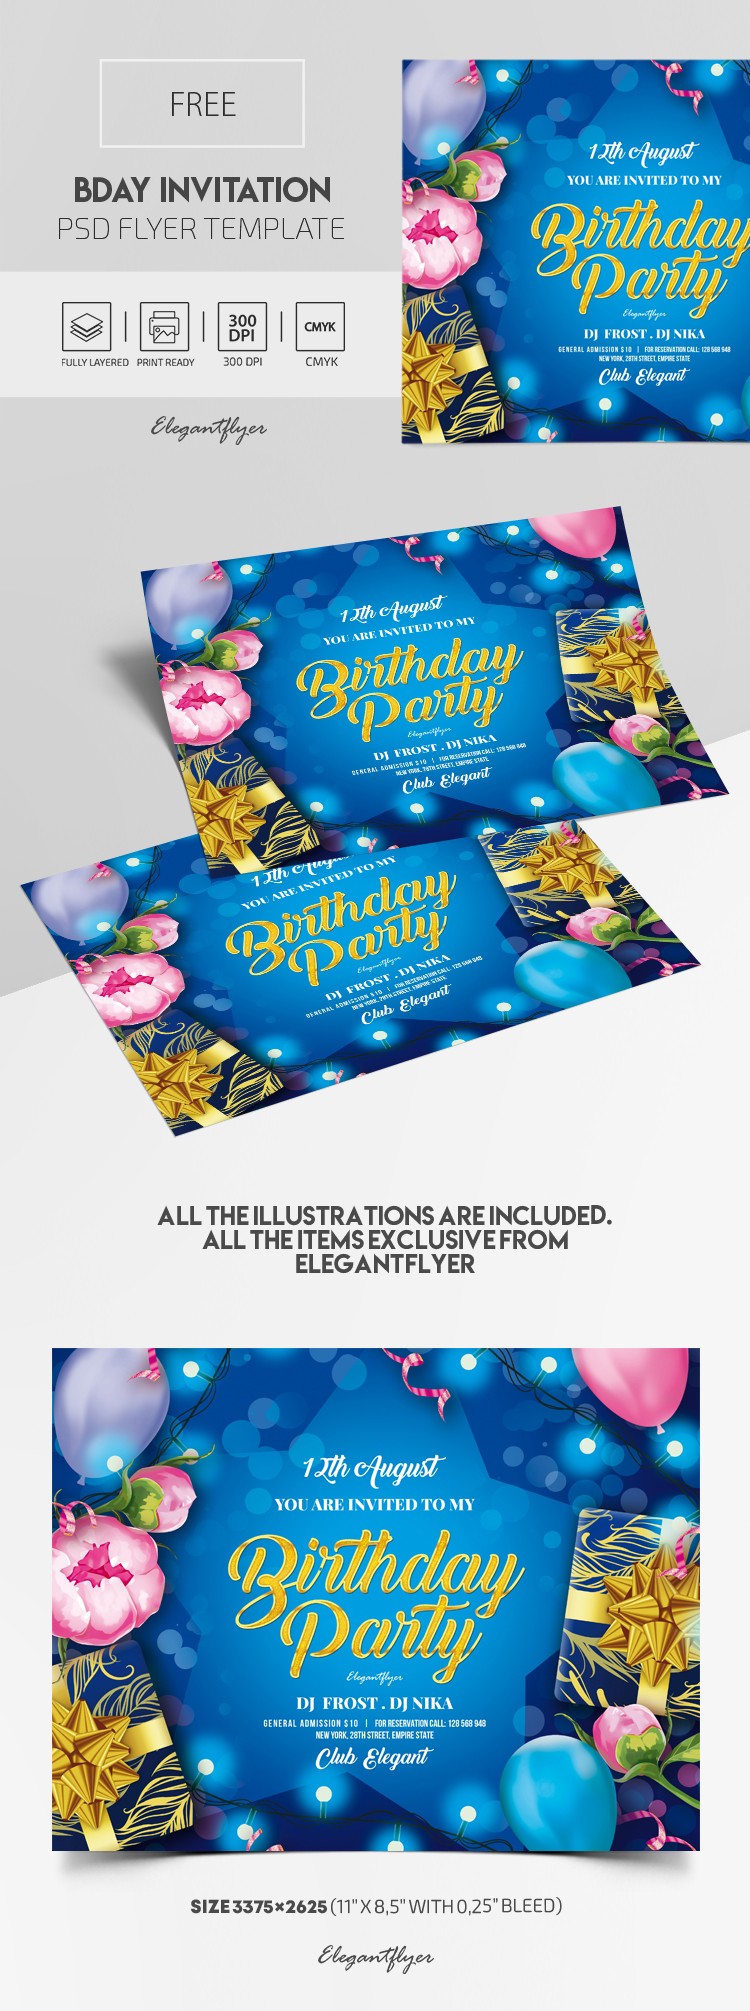 Modèle de carte d'invitation d'anniversaire gratuit